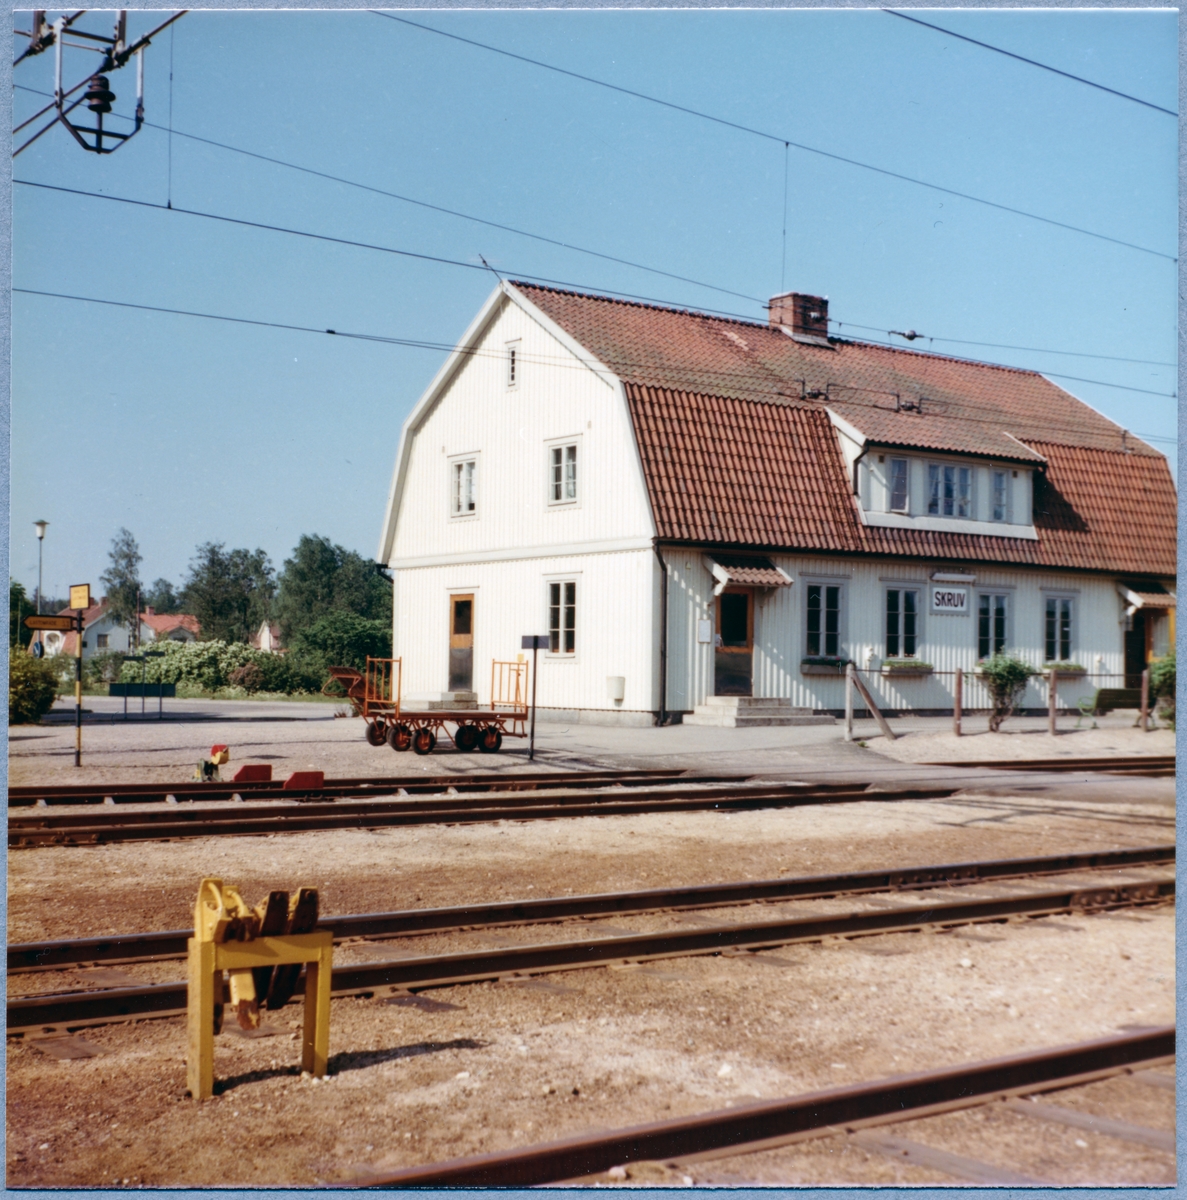 Station anlagd 1874. Stationshuset nybyggdes efter en brand 1927. Tvåvånings stationshus i trä .
"Skoställ" // "Bromsskoställ" syns i nedre vänstra hörnet